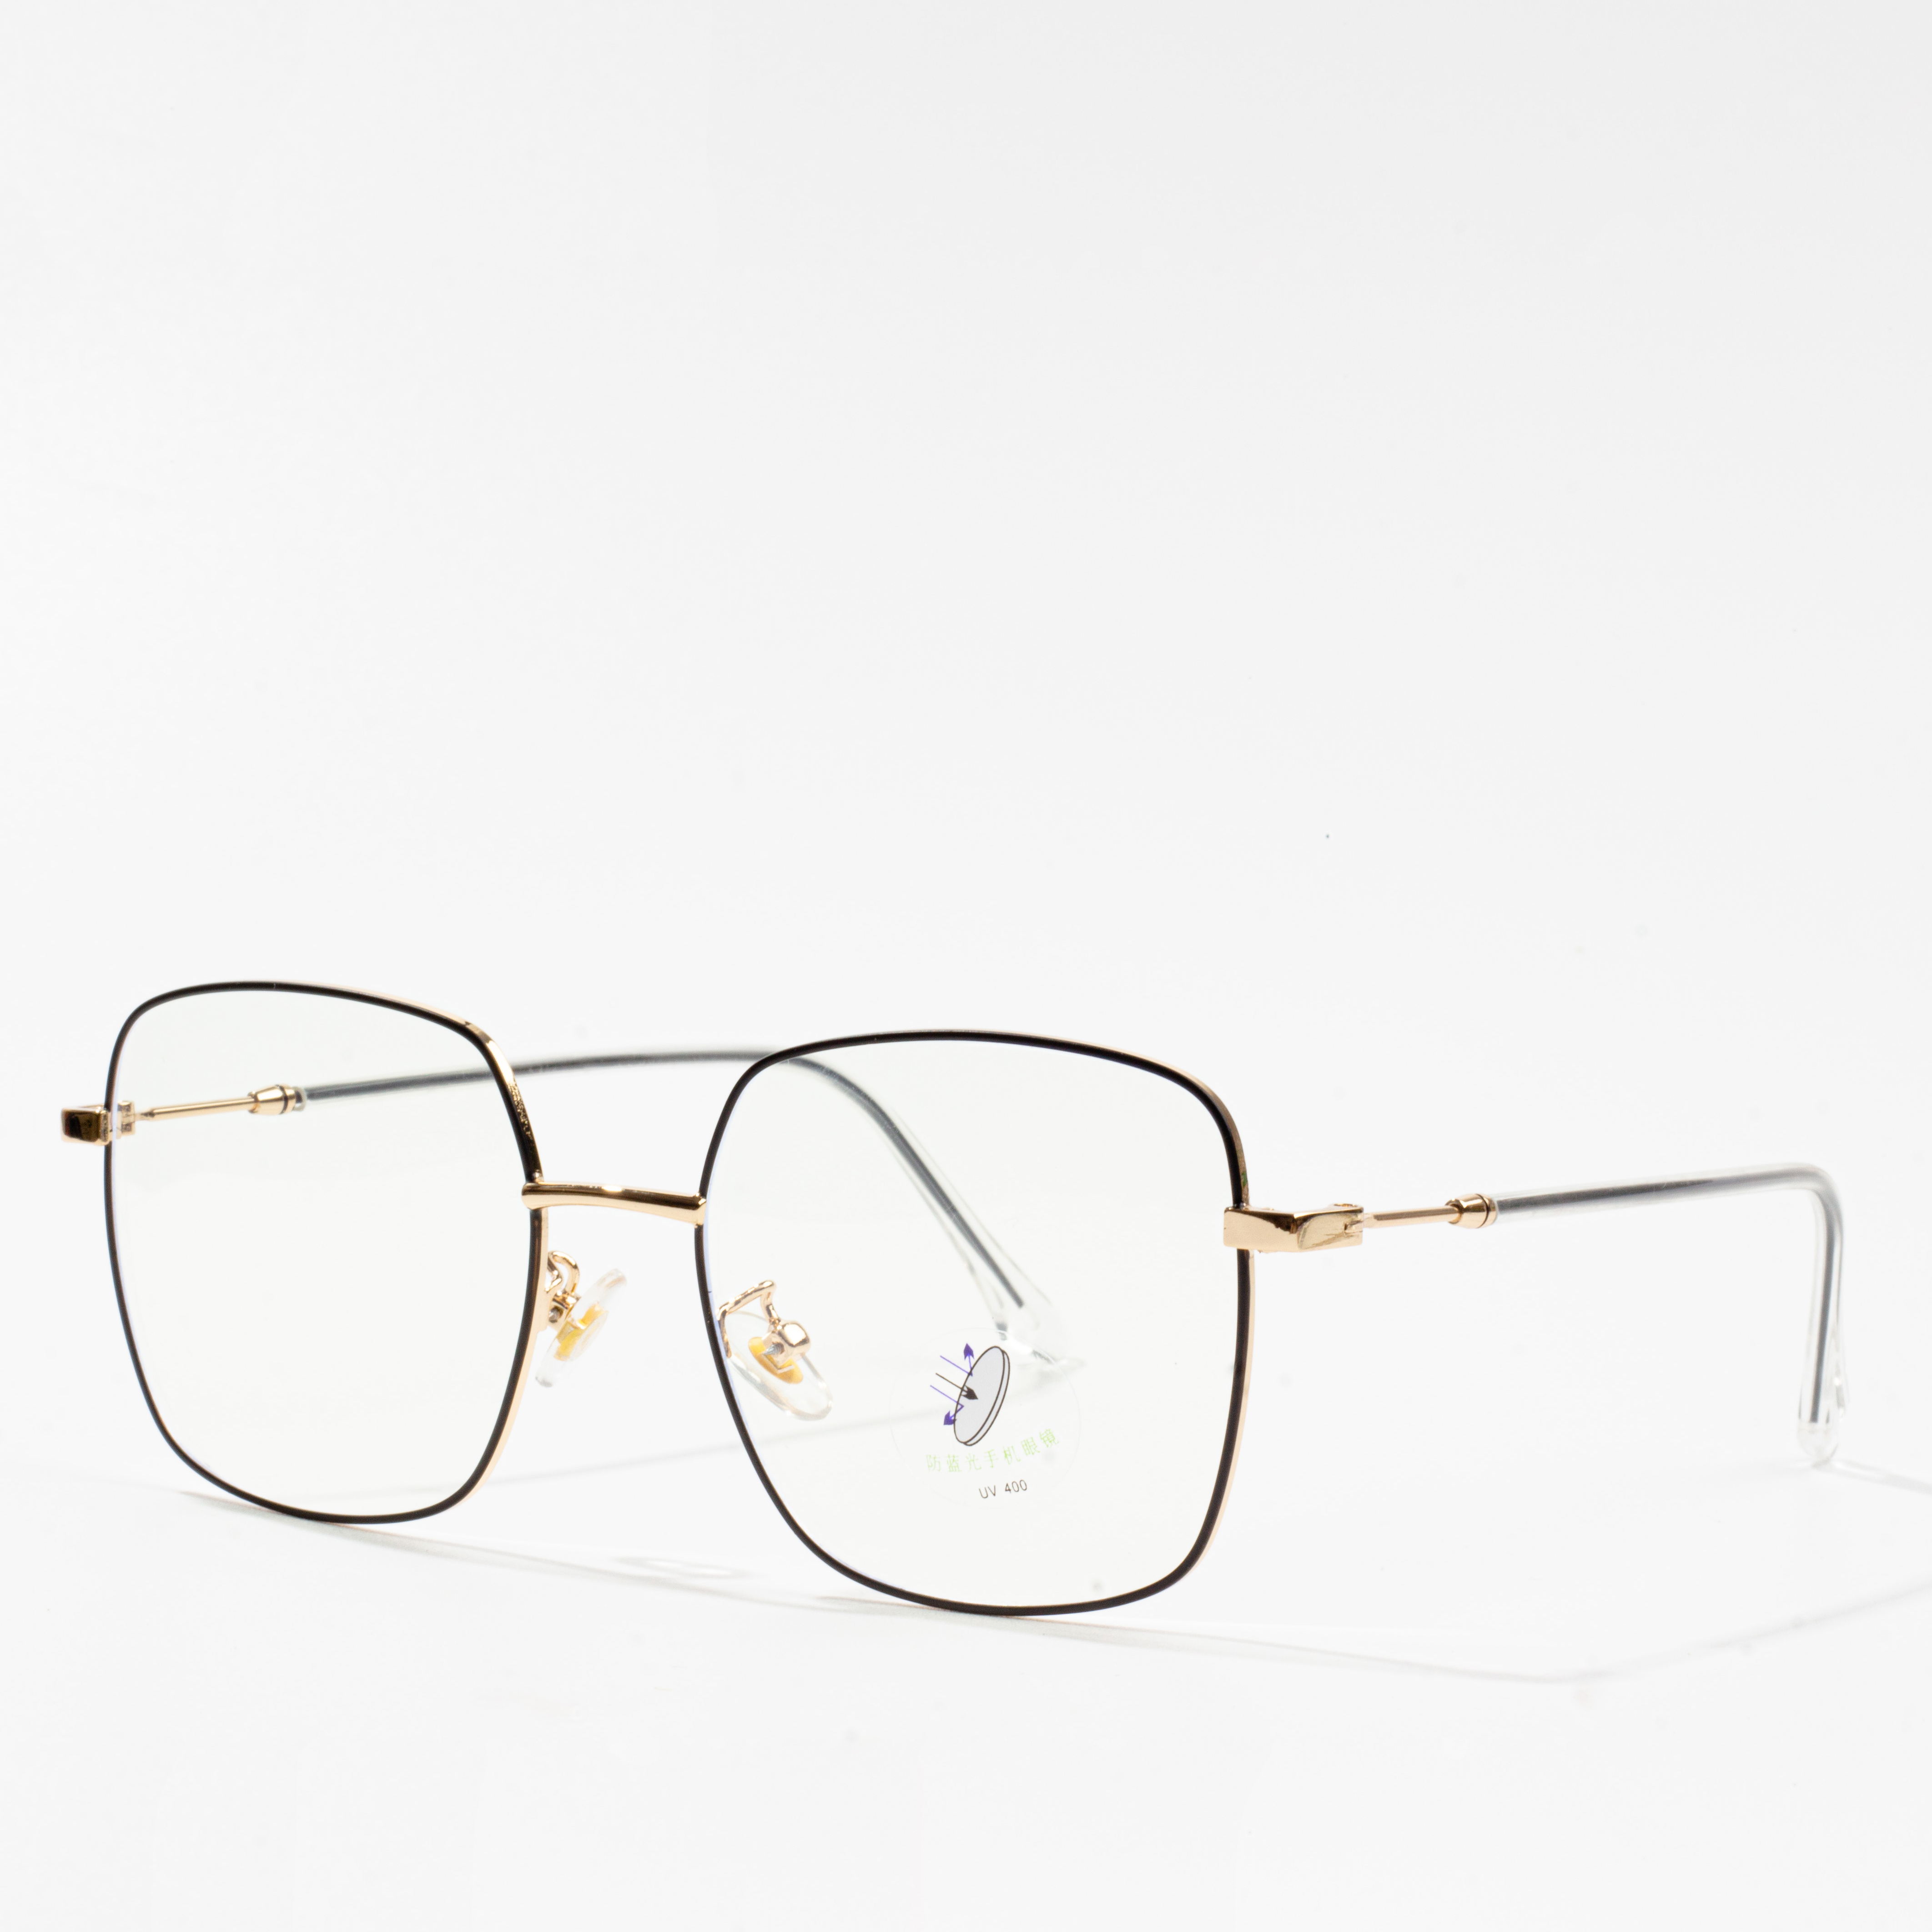 cornici metalliche per occhiali